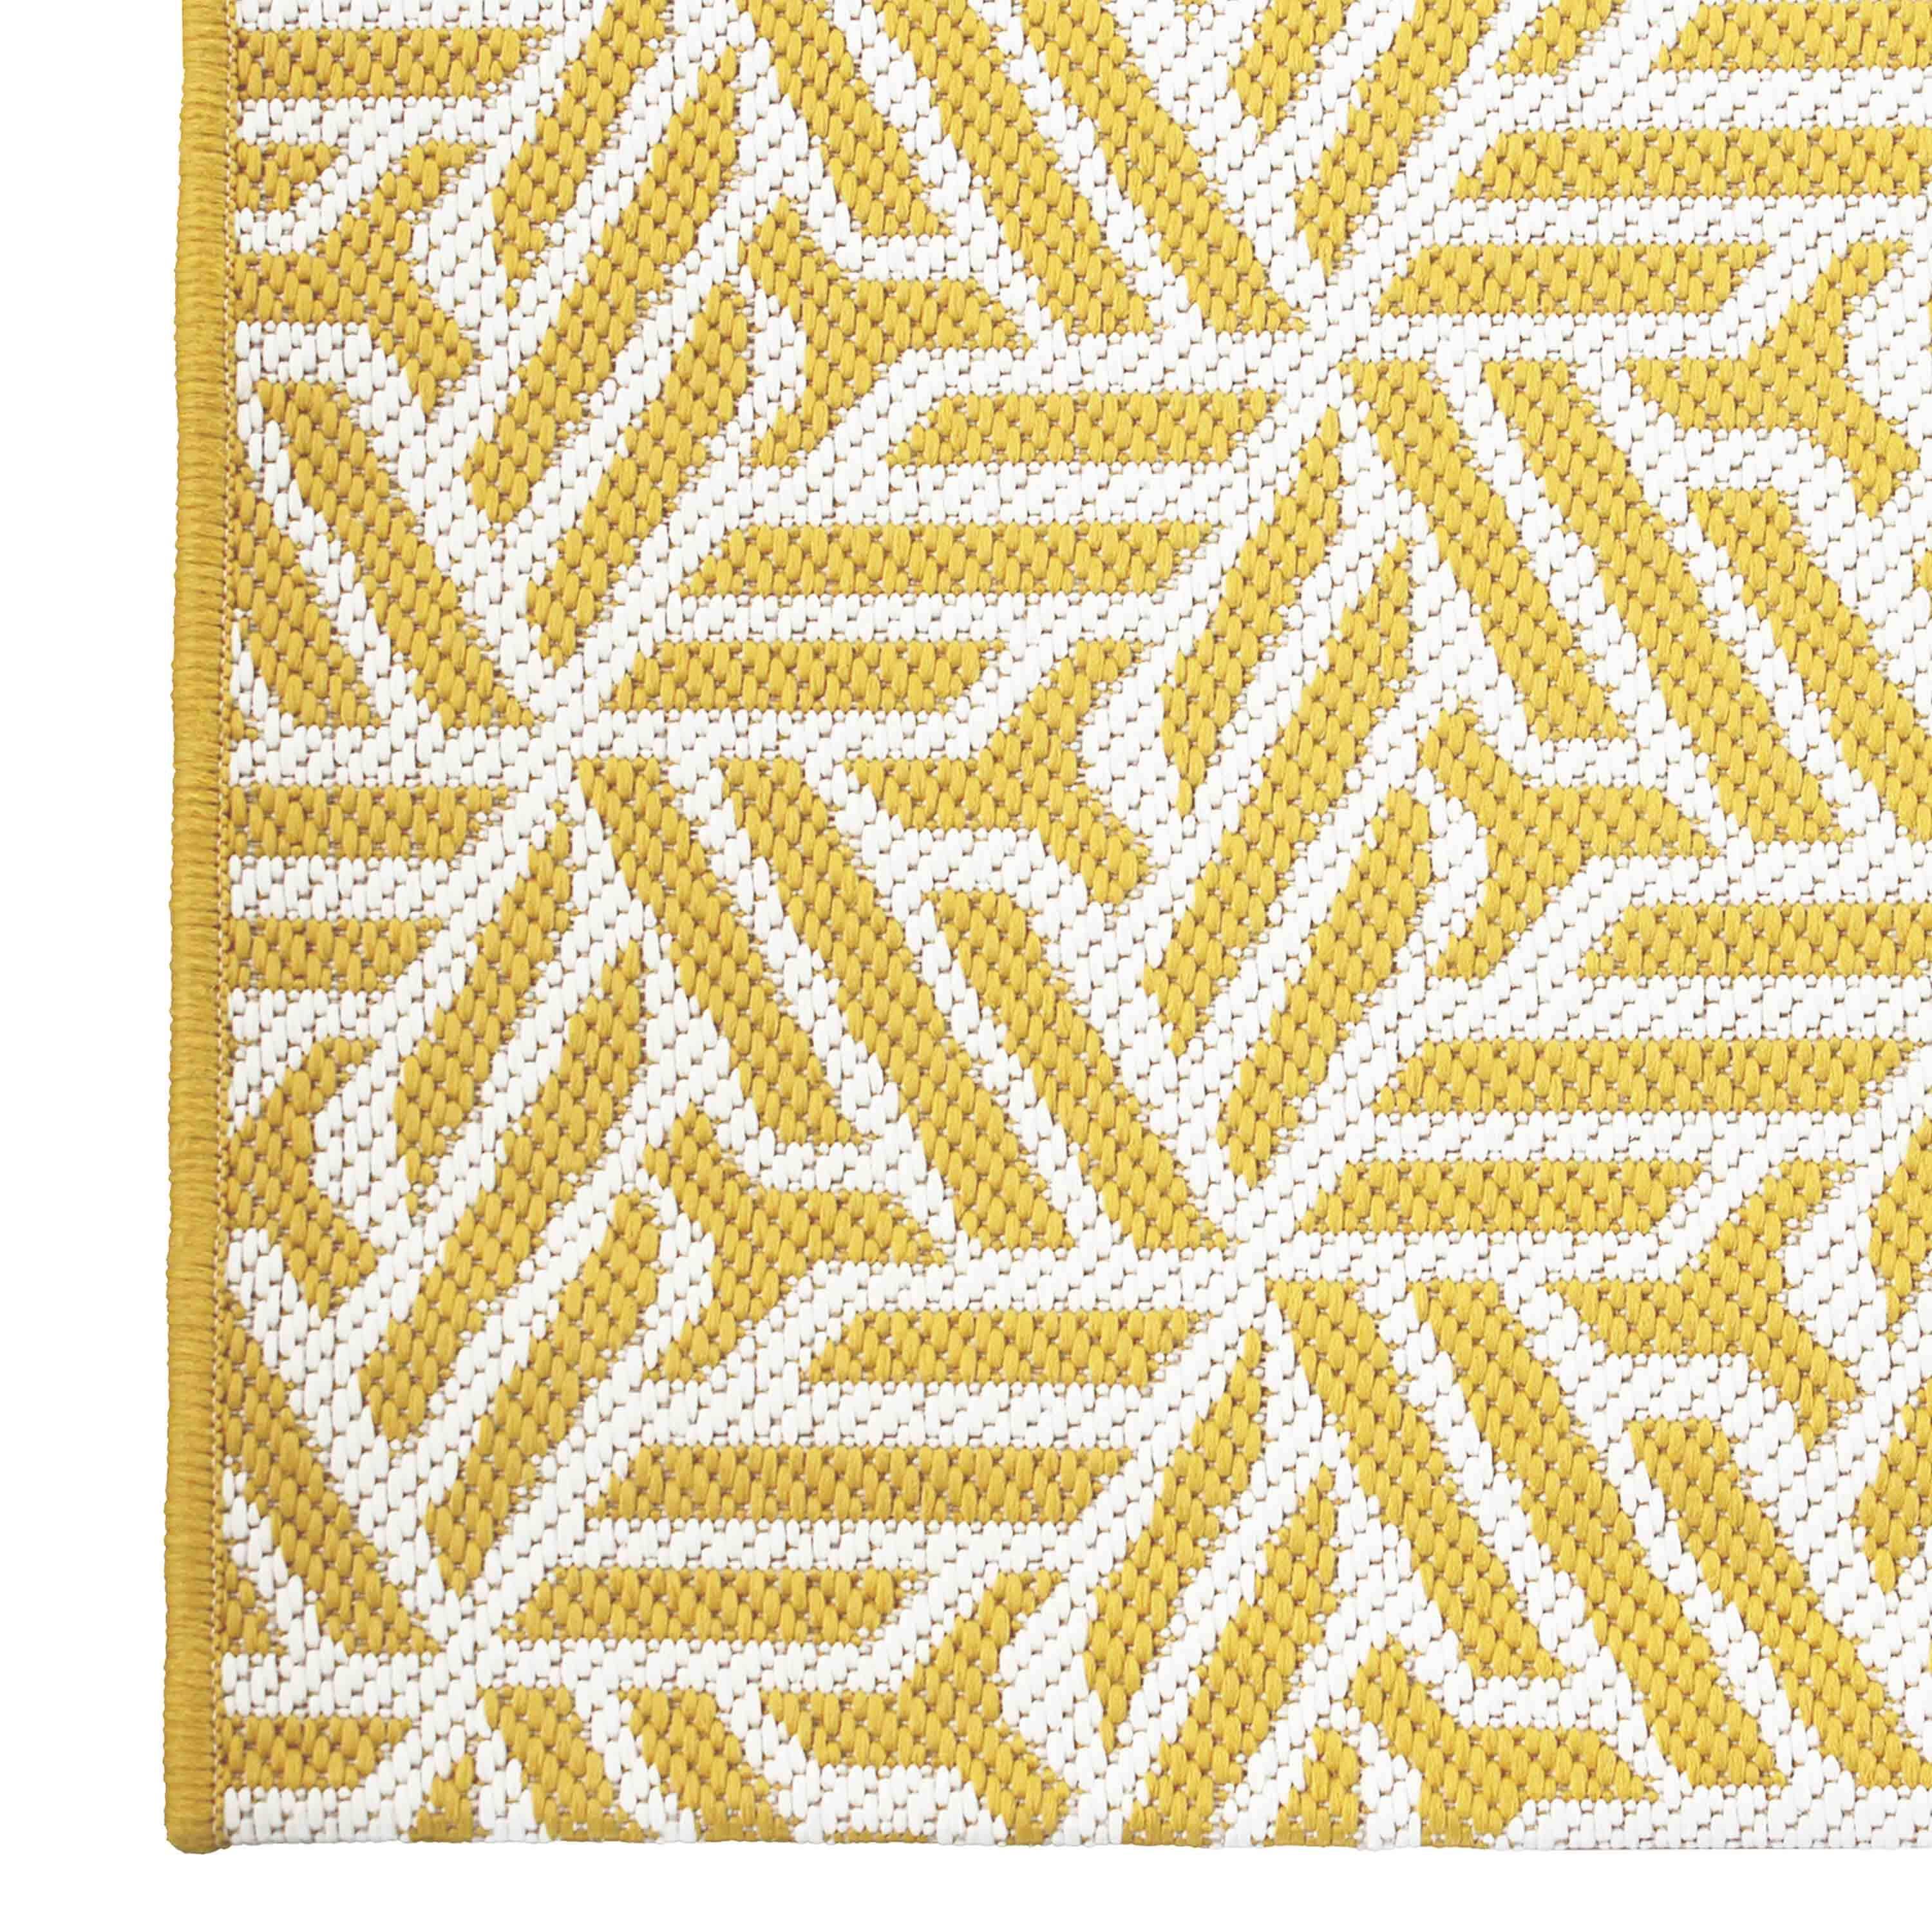 Tapis extérieur/intérieur 160 x 230 cm, jaune et blanc, densité 1,15 kg/m2, motif losanges, traité anti UV, toutes saisons Photo3